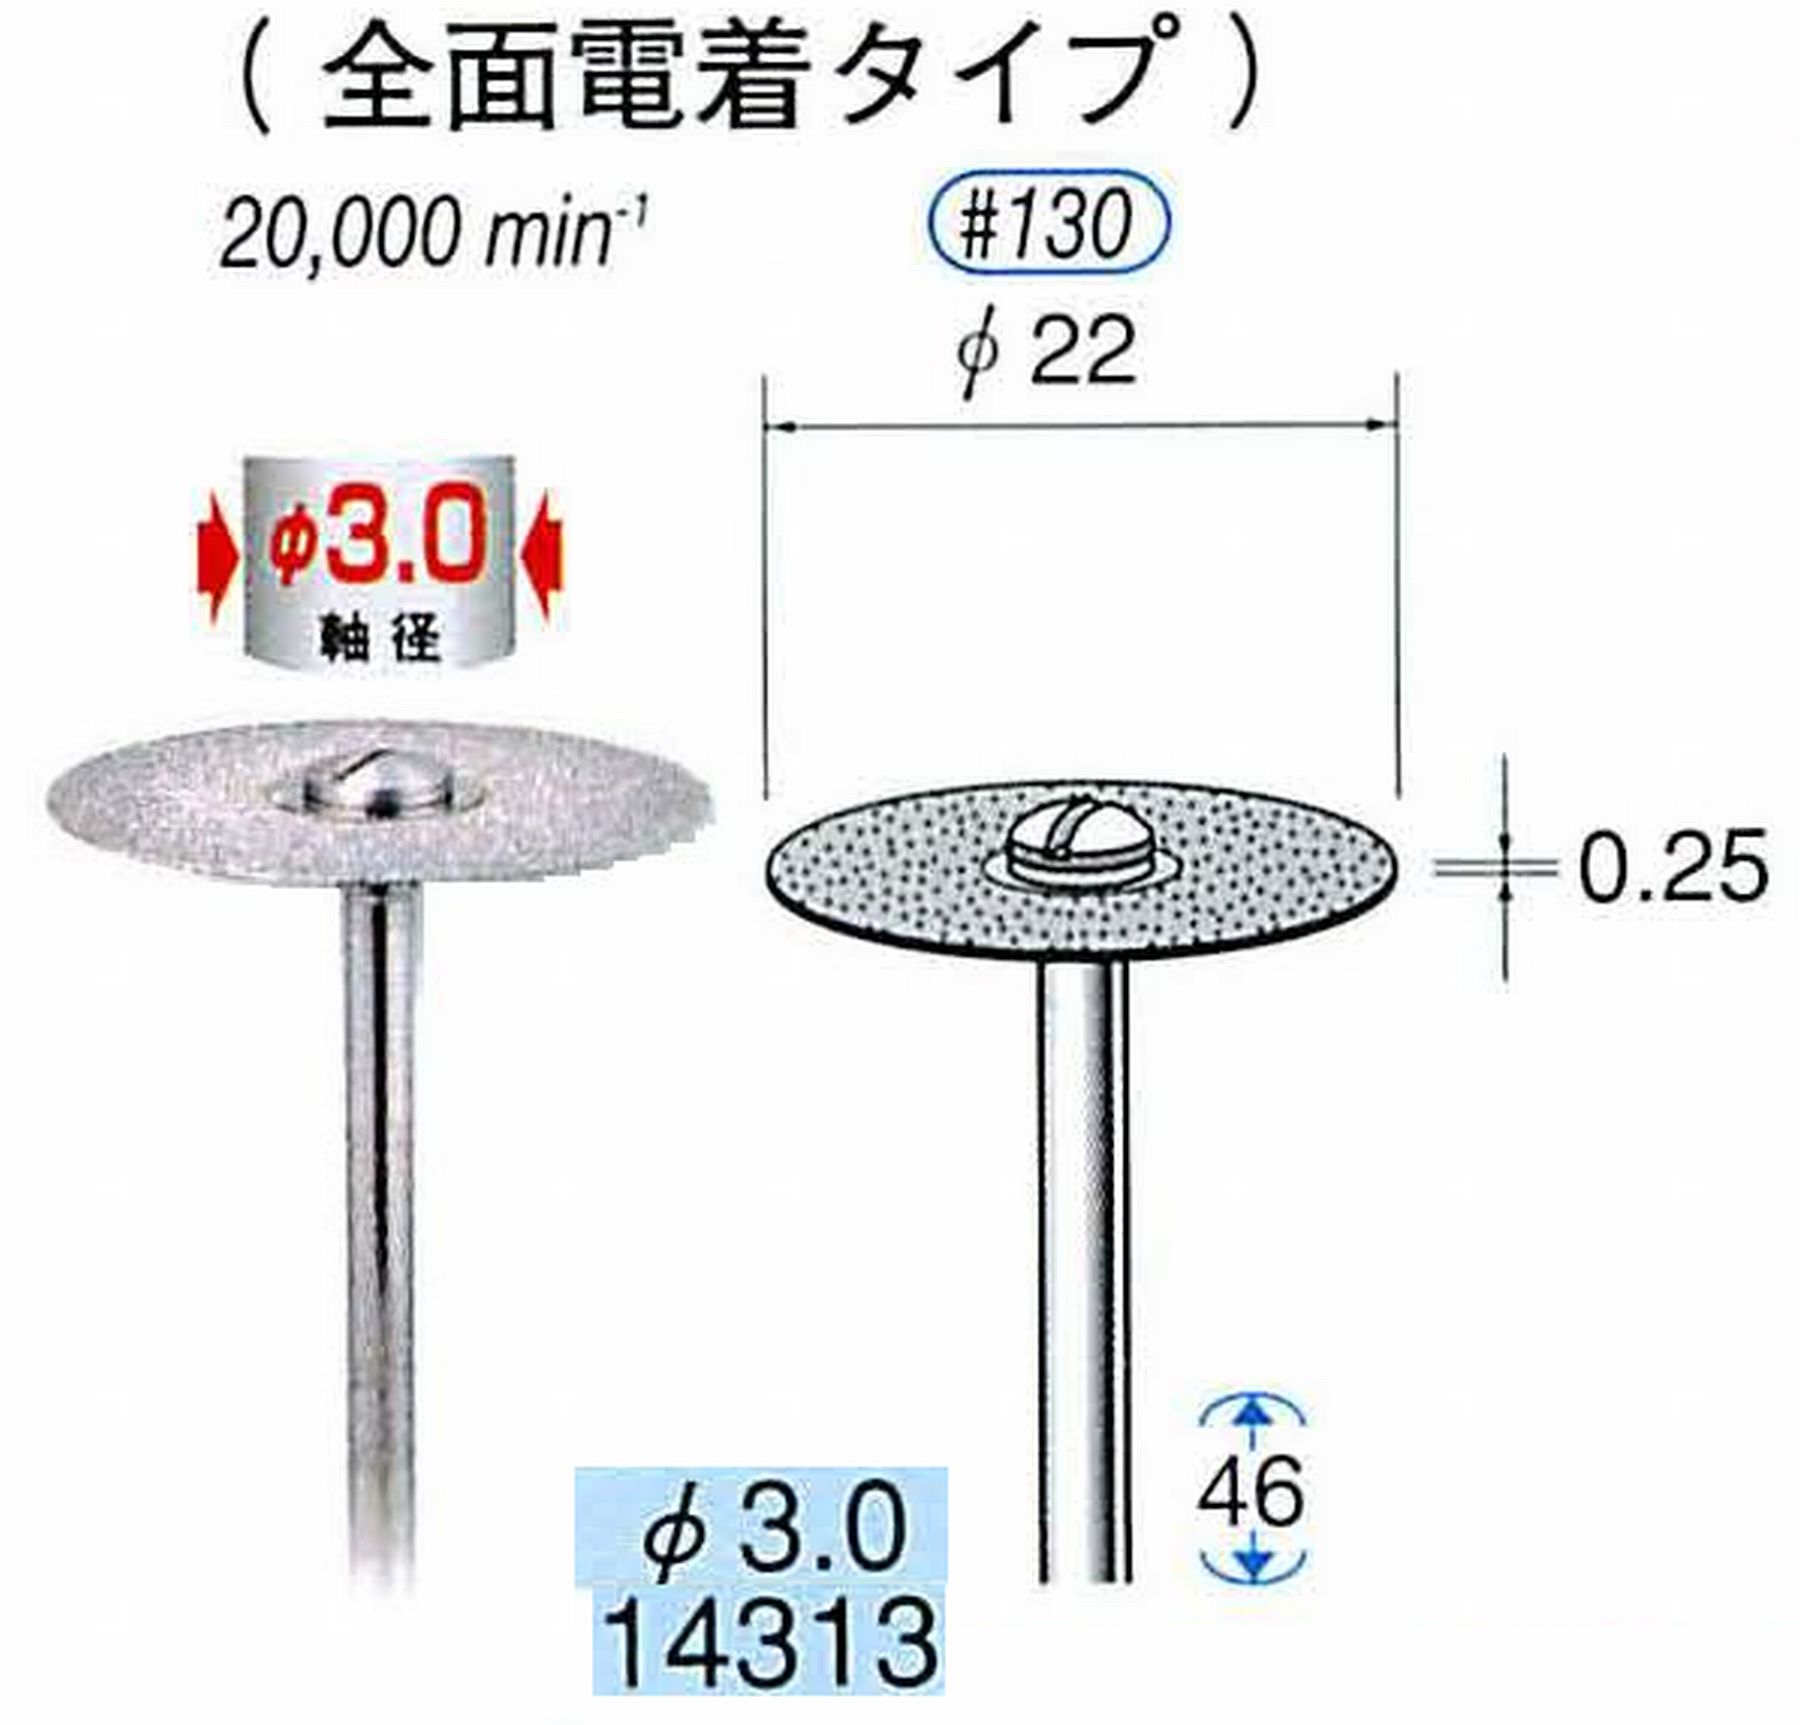 ナカニシ/NAKANISHI ダイヤモンドカッティングディスク 電着タイプ 軸径(シャンク)φ3.0mm 14313